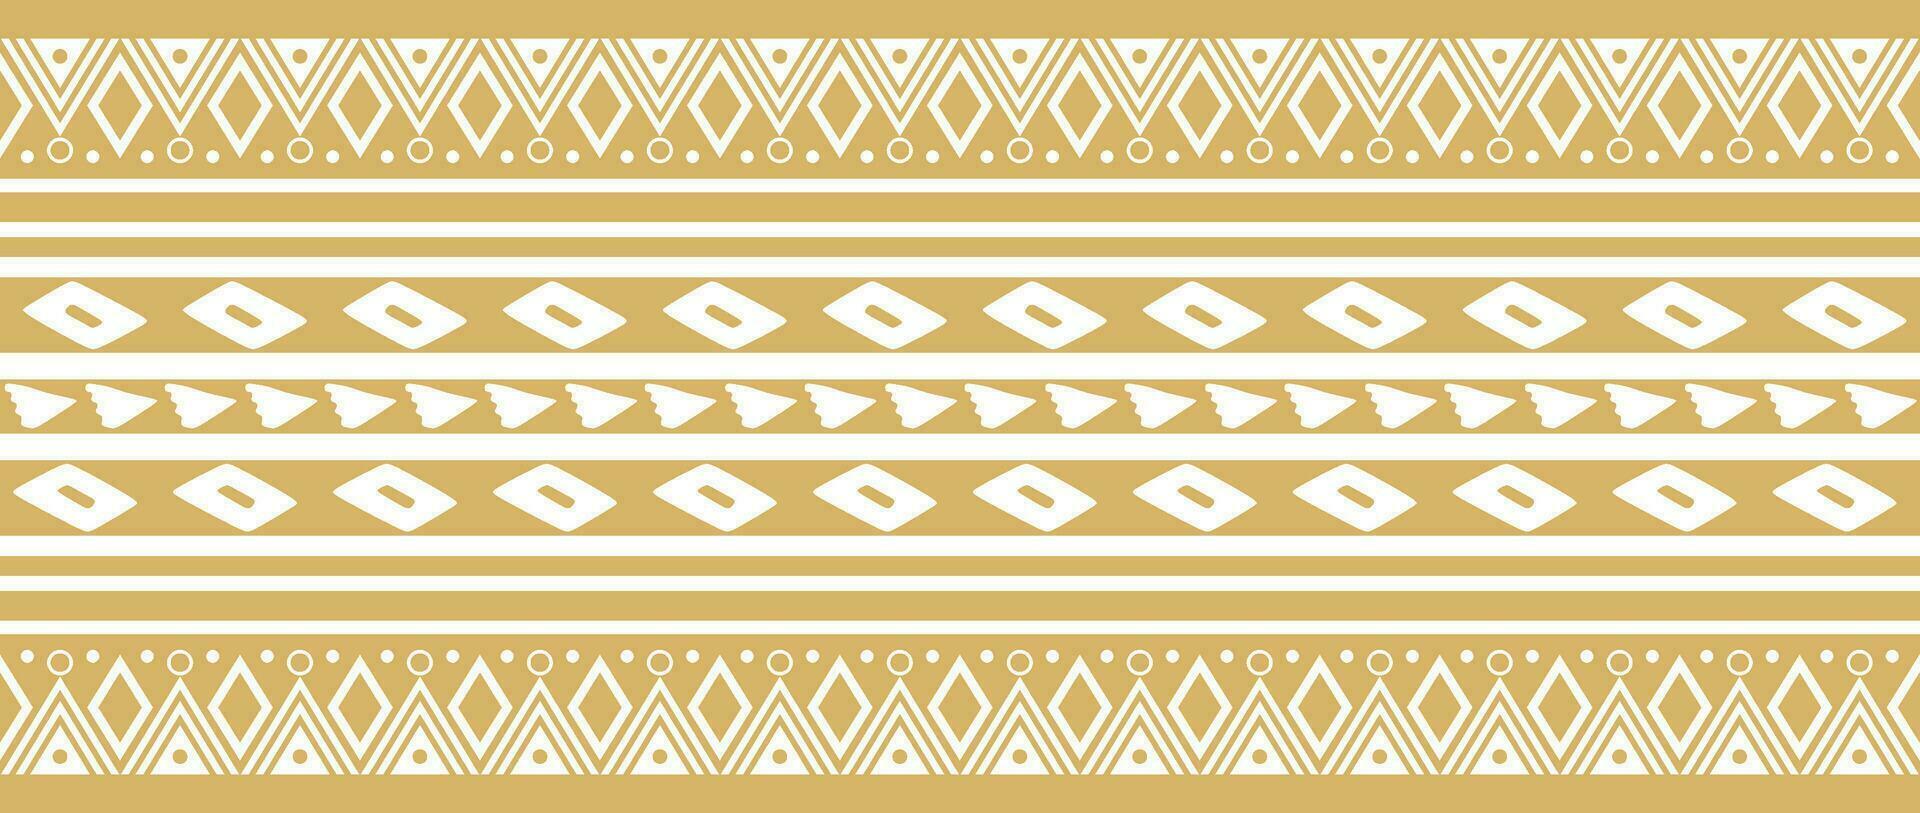 vetor dourado desatado indiano padrões. nacional desatado enfeites, fronteiras, quadros. colori decorações do a povos do sul América, maia, inca, astecas. impressão para tecido, papel, têxtil